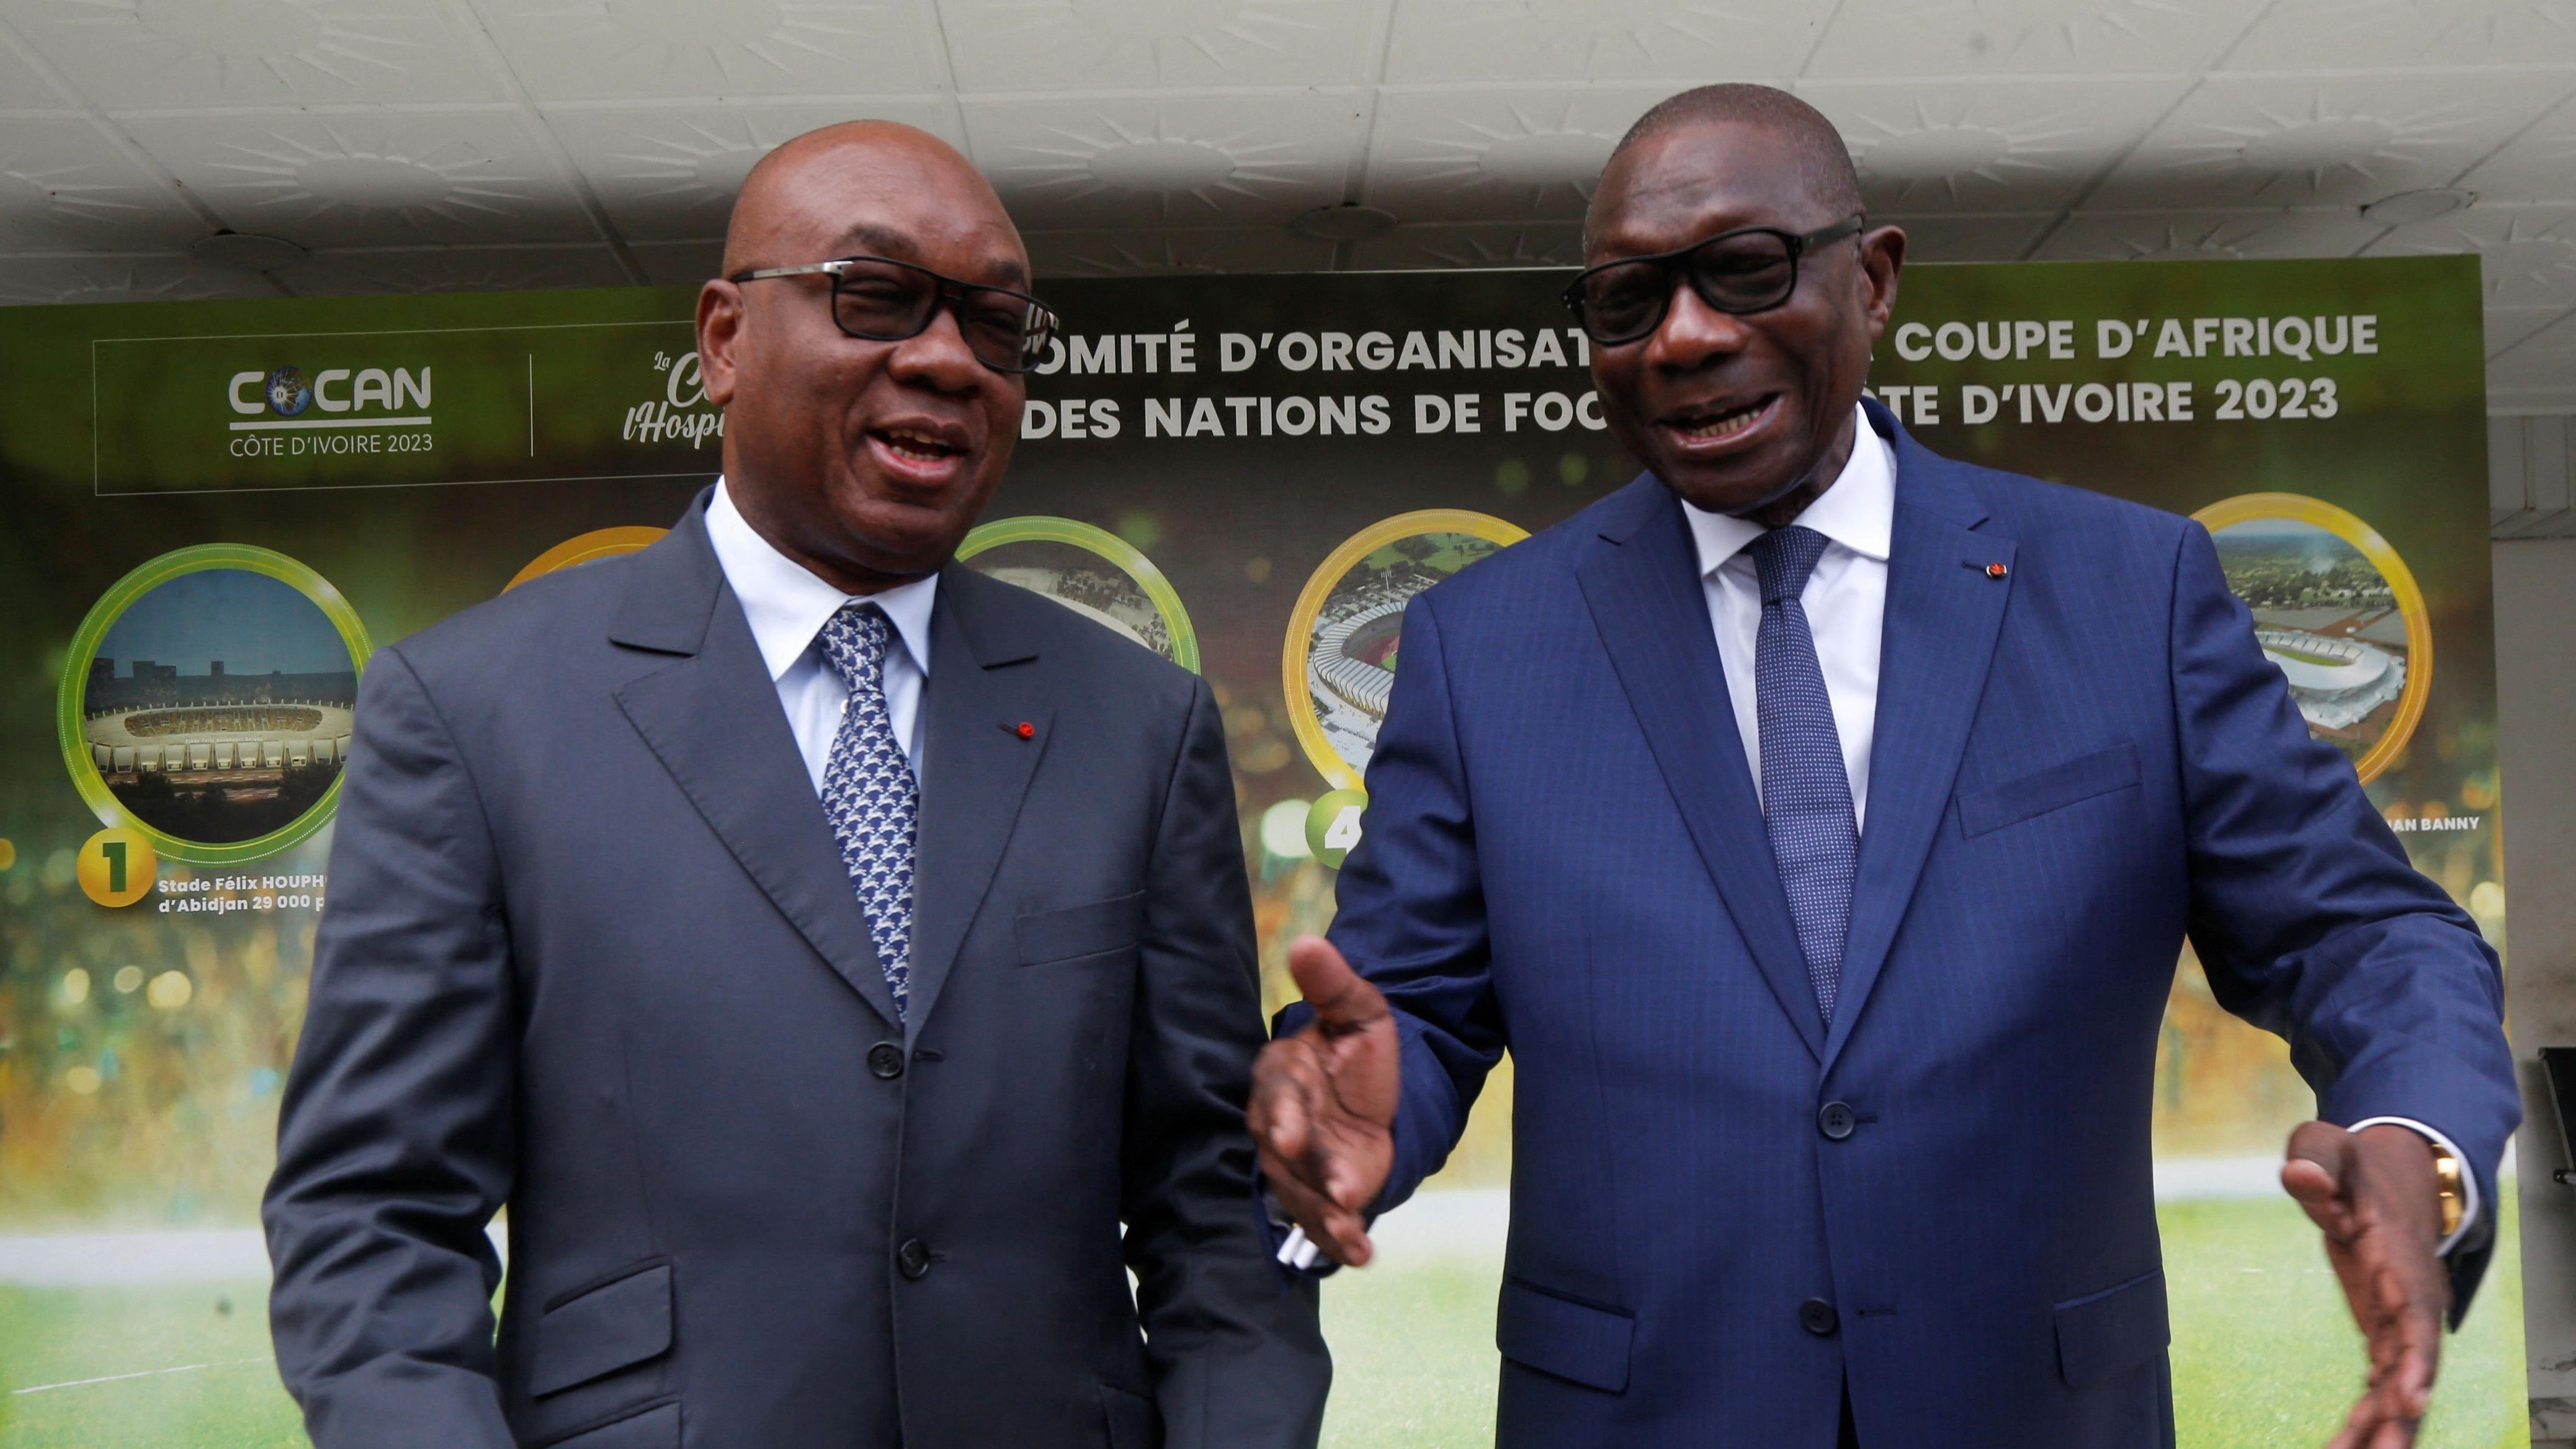 شارك رئيس الاتحاد الإيفواري لكرة القدم إدريس ديالو (يسار) ورئيس اللجنة المنظمة المحلية فرانسوا أميتشيا (يمين) بشكل كبير في إعداد ساحل العاج لكأس الأمم الأفريقية 2023.